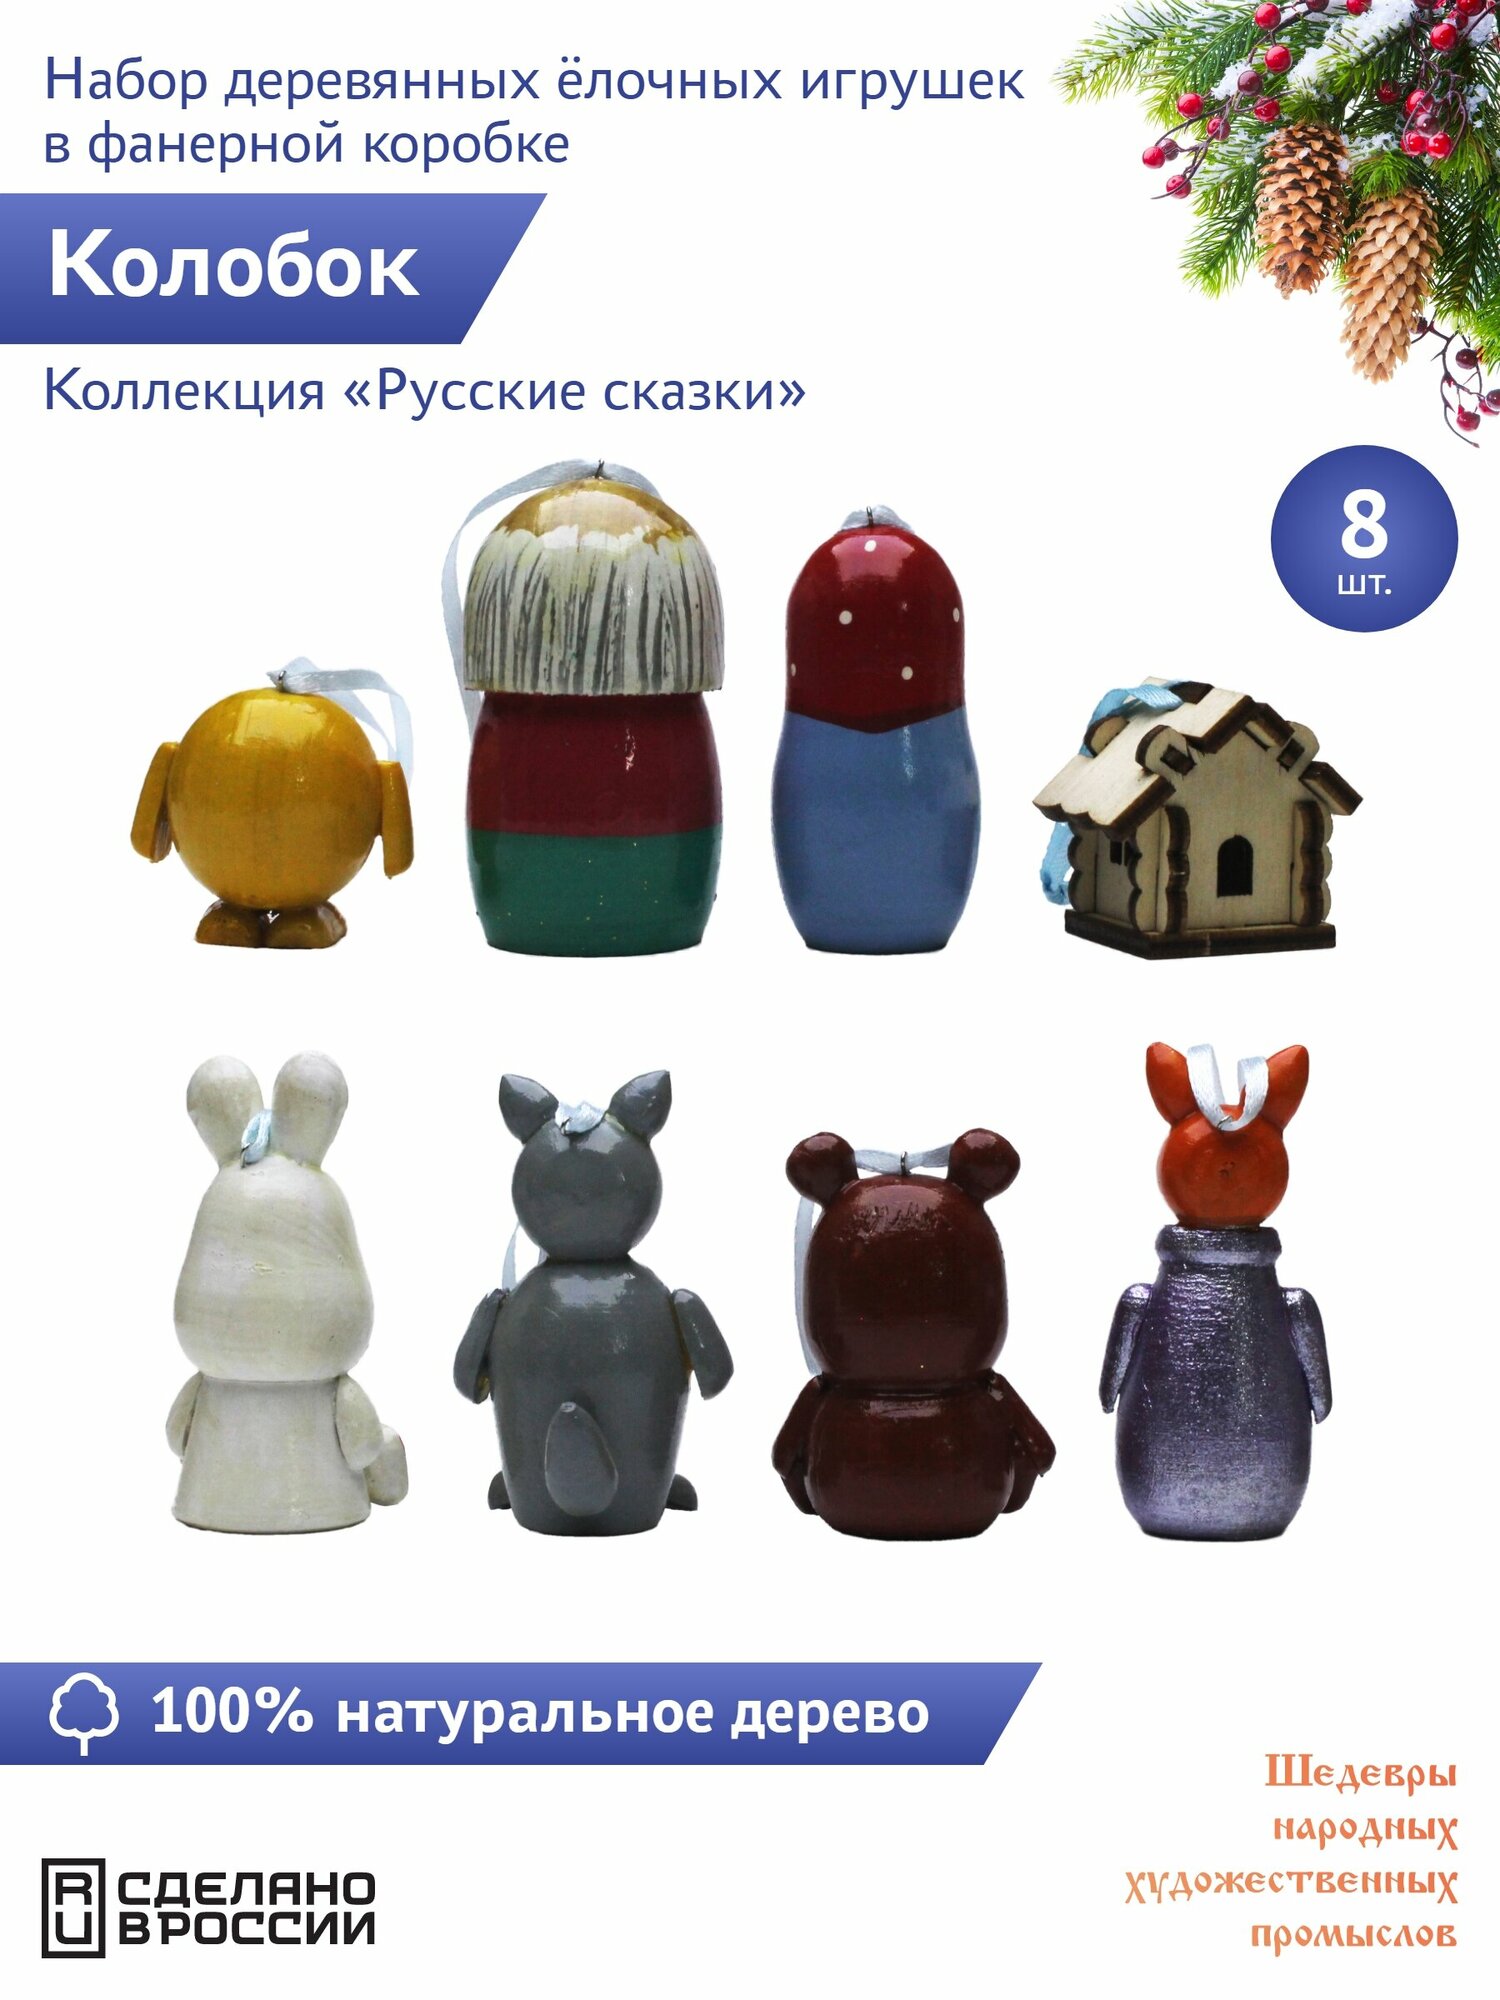 "Русские сказки: Колобок" 8 штук Сказочный персонаж набор деревянных елочных игрушек в фанерной коробке